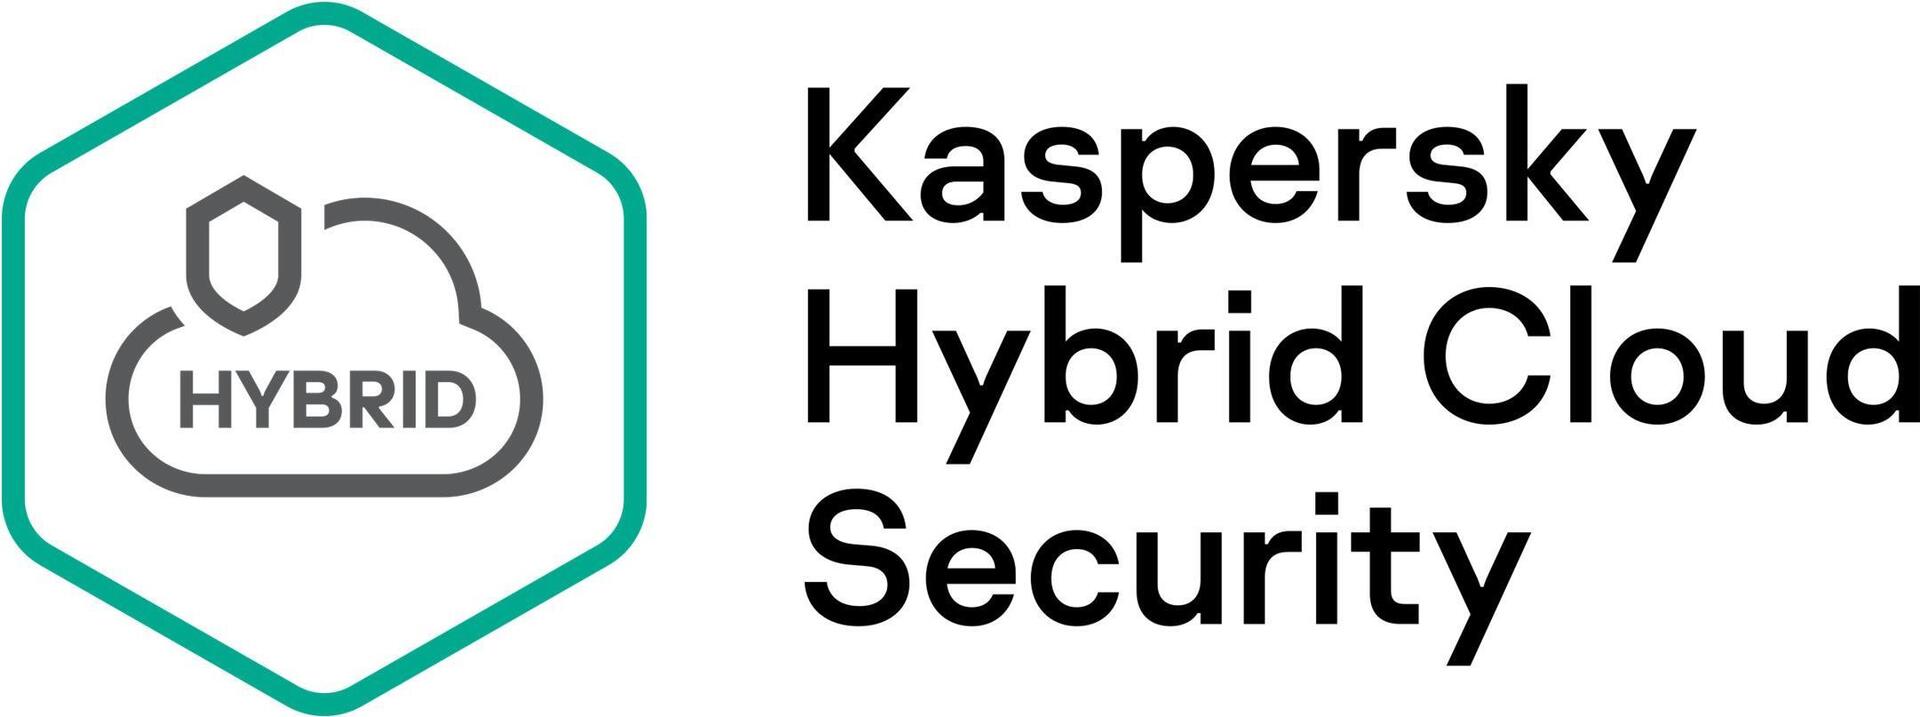 Kaspersky Hybrid Cloud Security (KL4554XATT9)